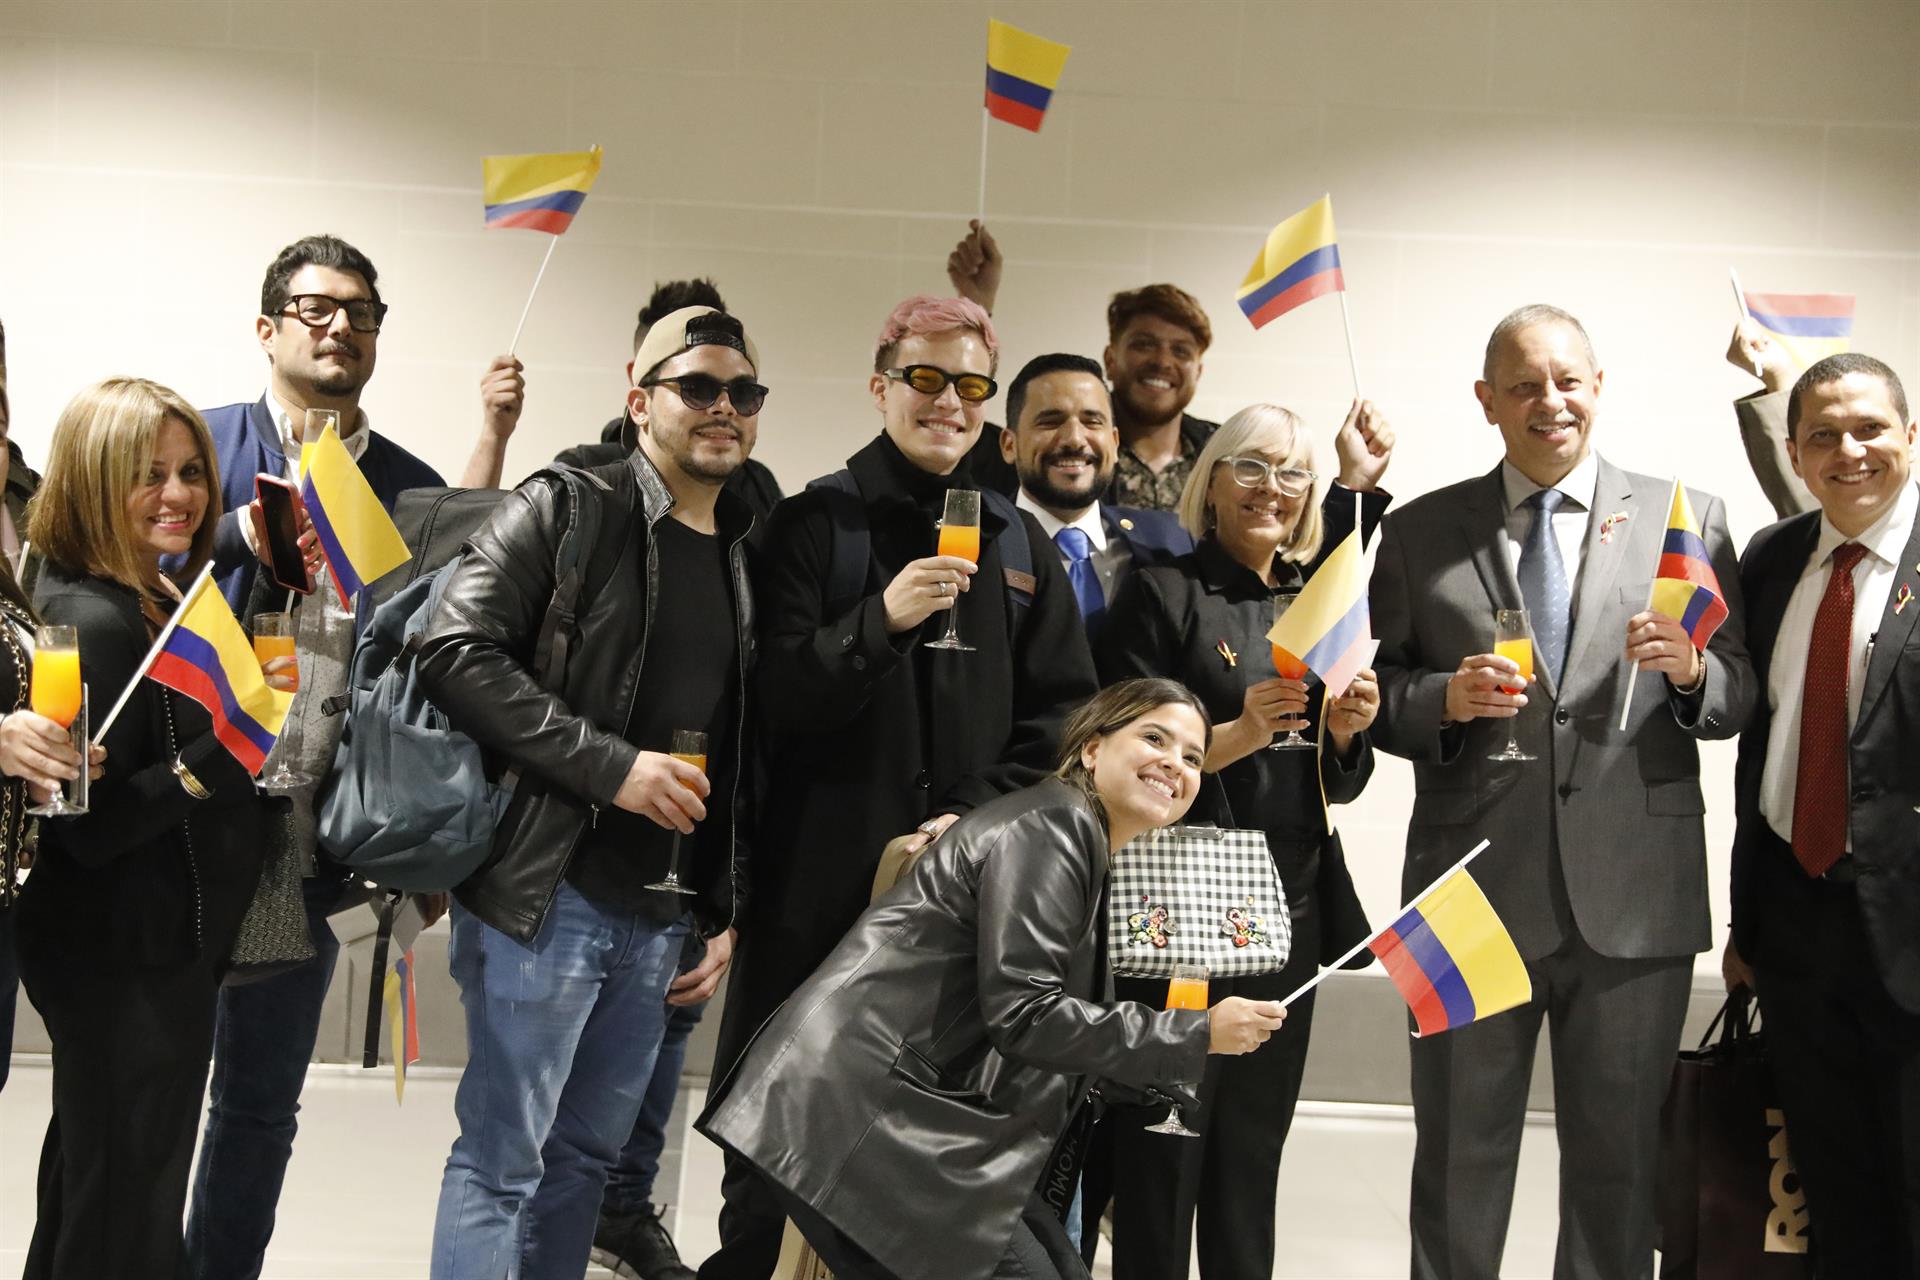 El avión viajó co 45 pasajeros a bordo, entre colombianos y venezolanos.